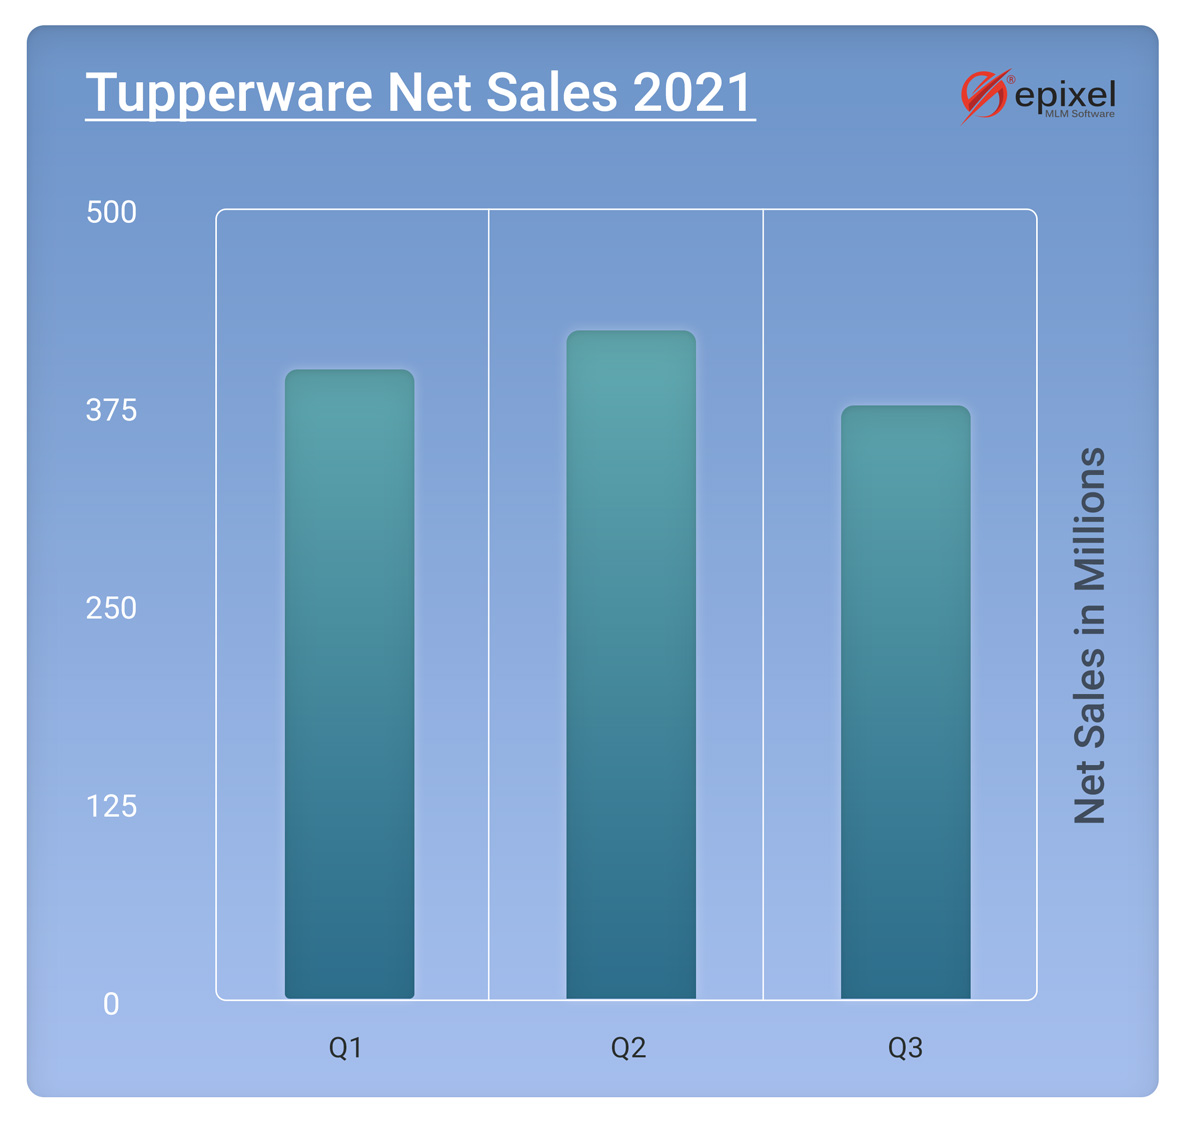 Quarterly analysis of Tupperware